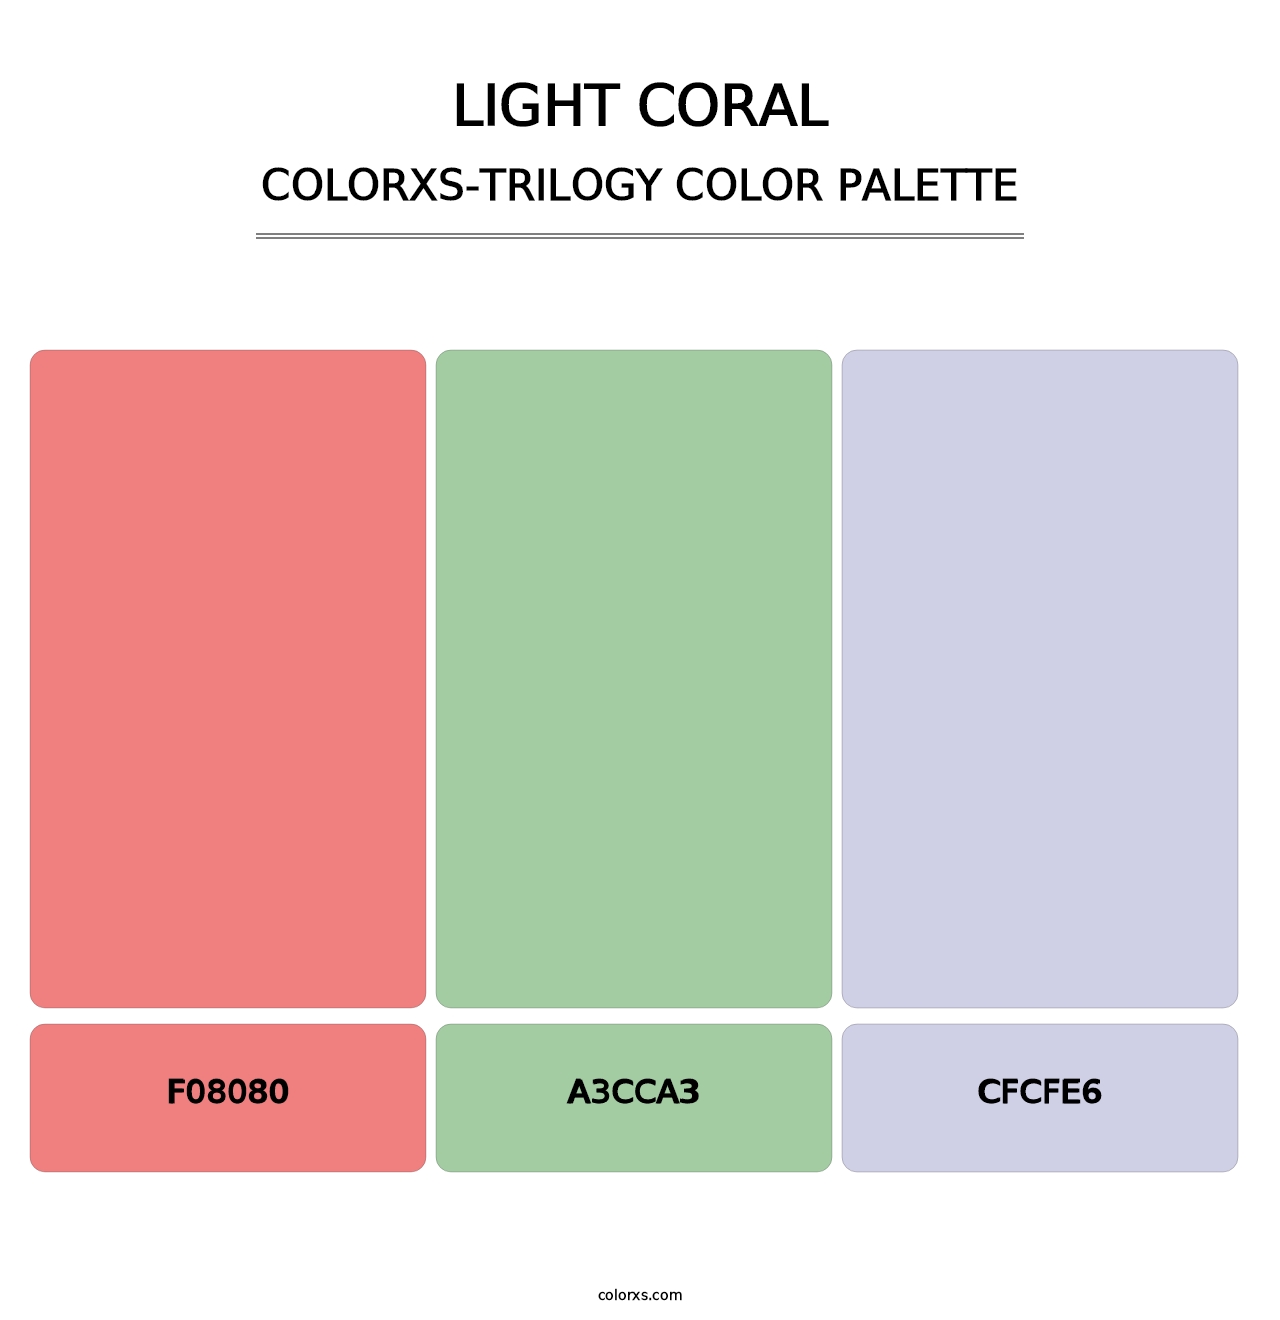 Light Coral - Colorxs Trilogy Palette